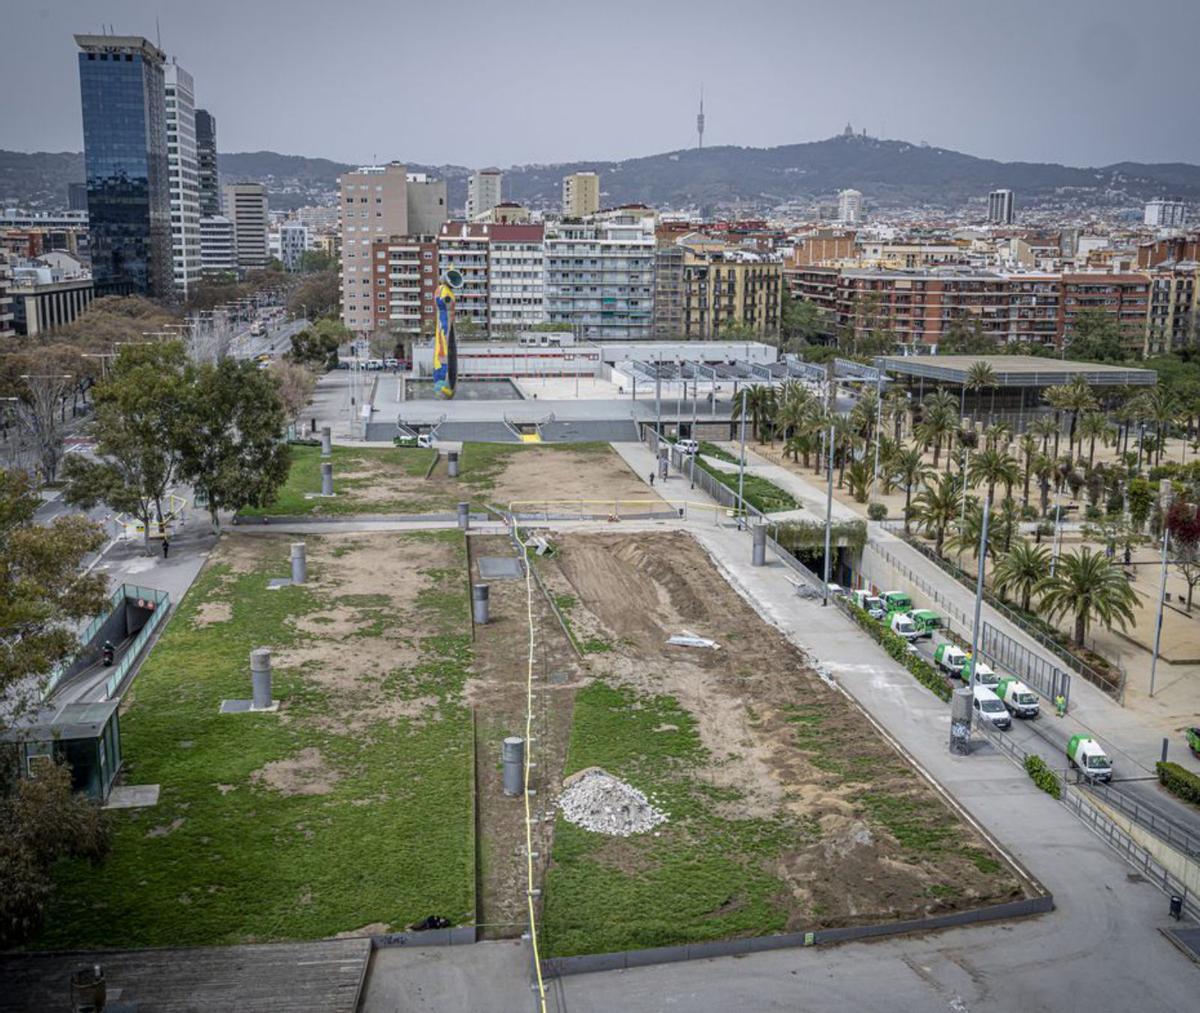 Parc de Joan Miró i plaça d’Espanya, zones calentes